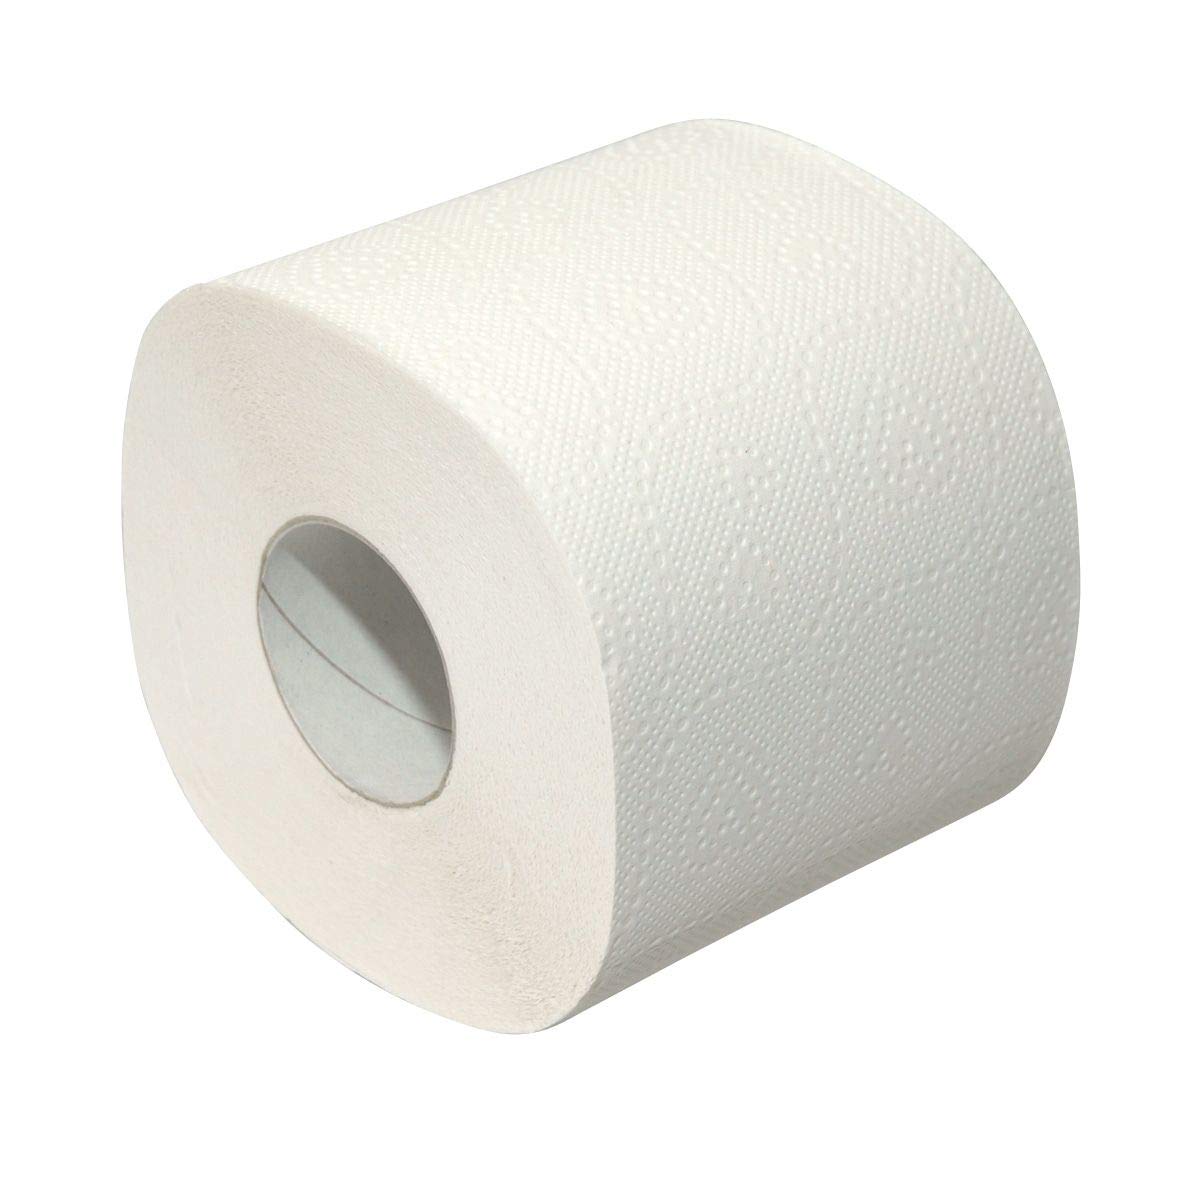 Wepa Toilettenpapier Prestige, 4lg, 9,5x13cm, 72 Rollen